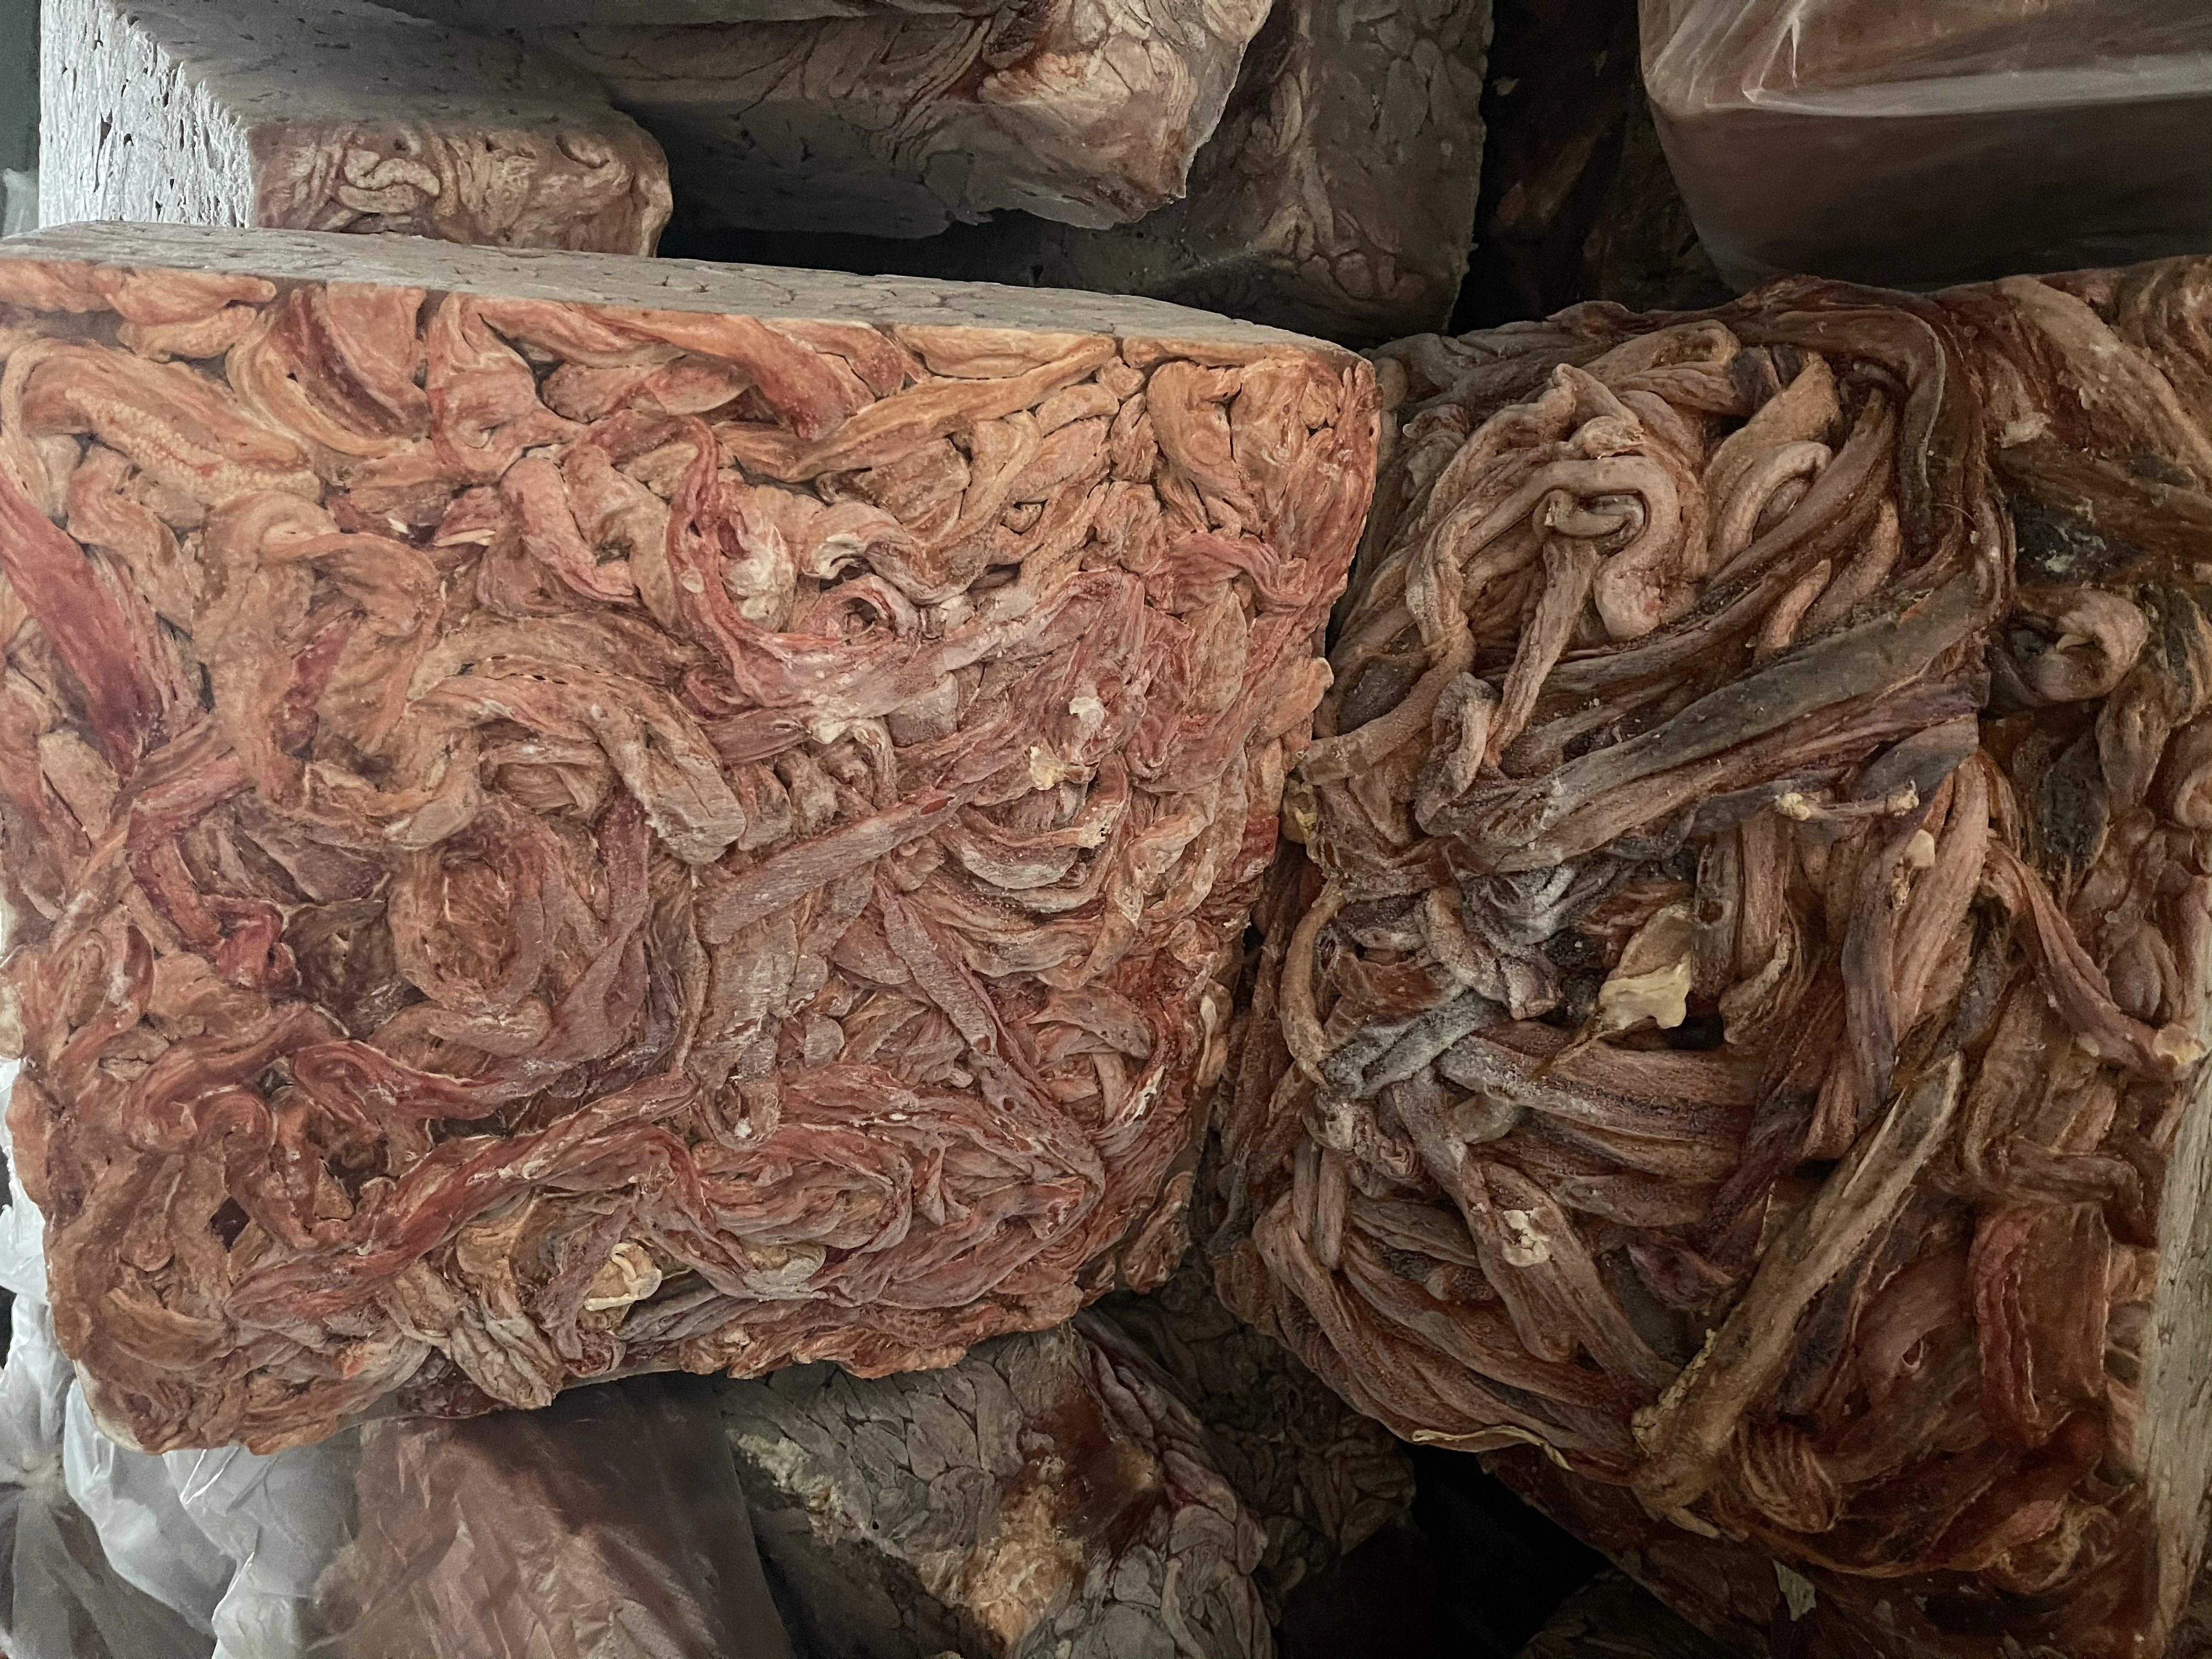 покупать свиные тонкие кишки без жира  в Тамбове и Тамбовской области